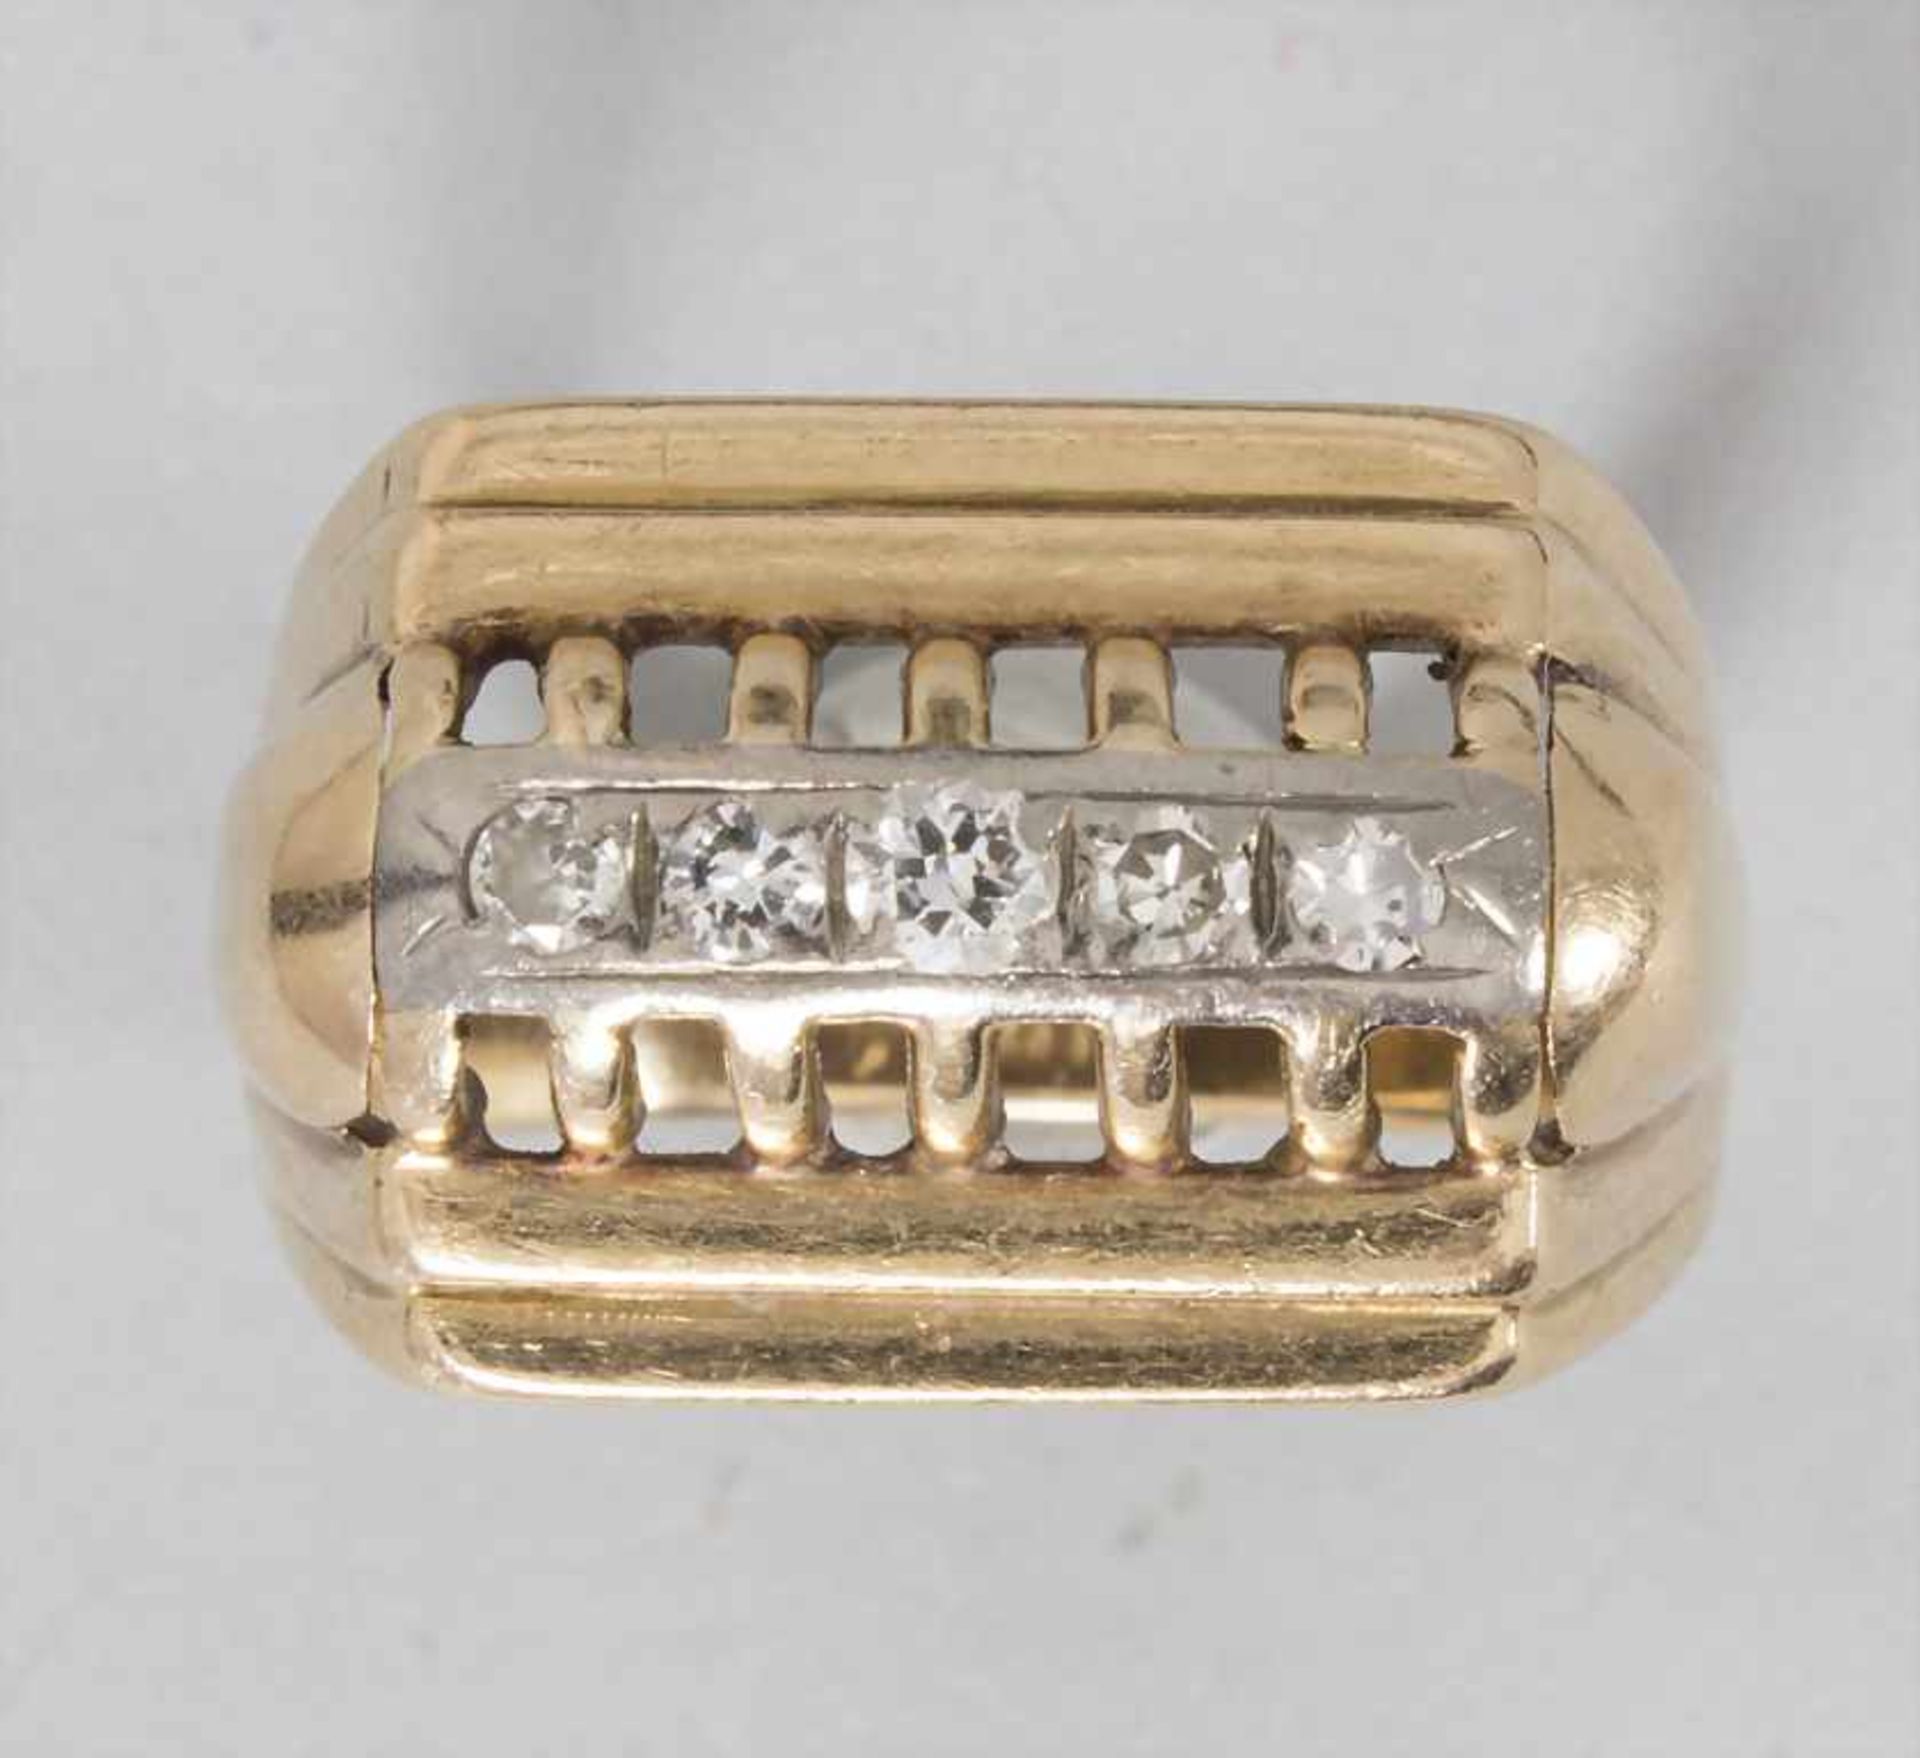 Damenring mit Diamanten / A ladies ring with diamonds - Image 2 of 3